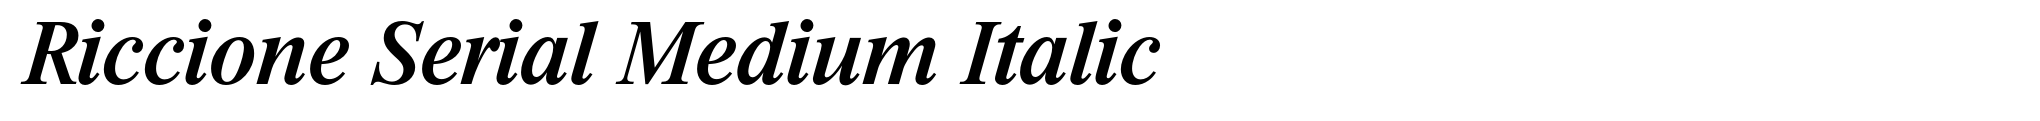 Riccione Serial Medium Italic image